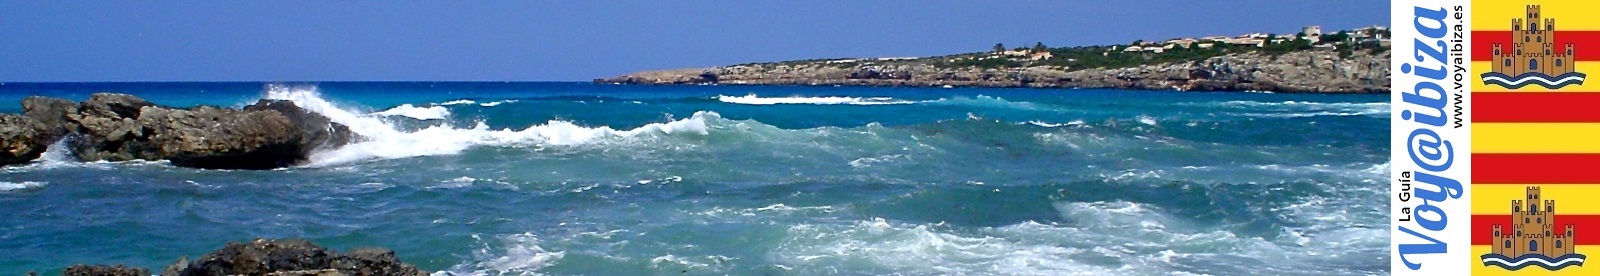 Leyendas de Formentera